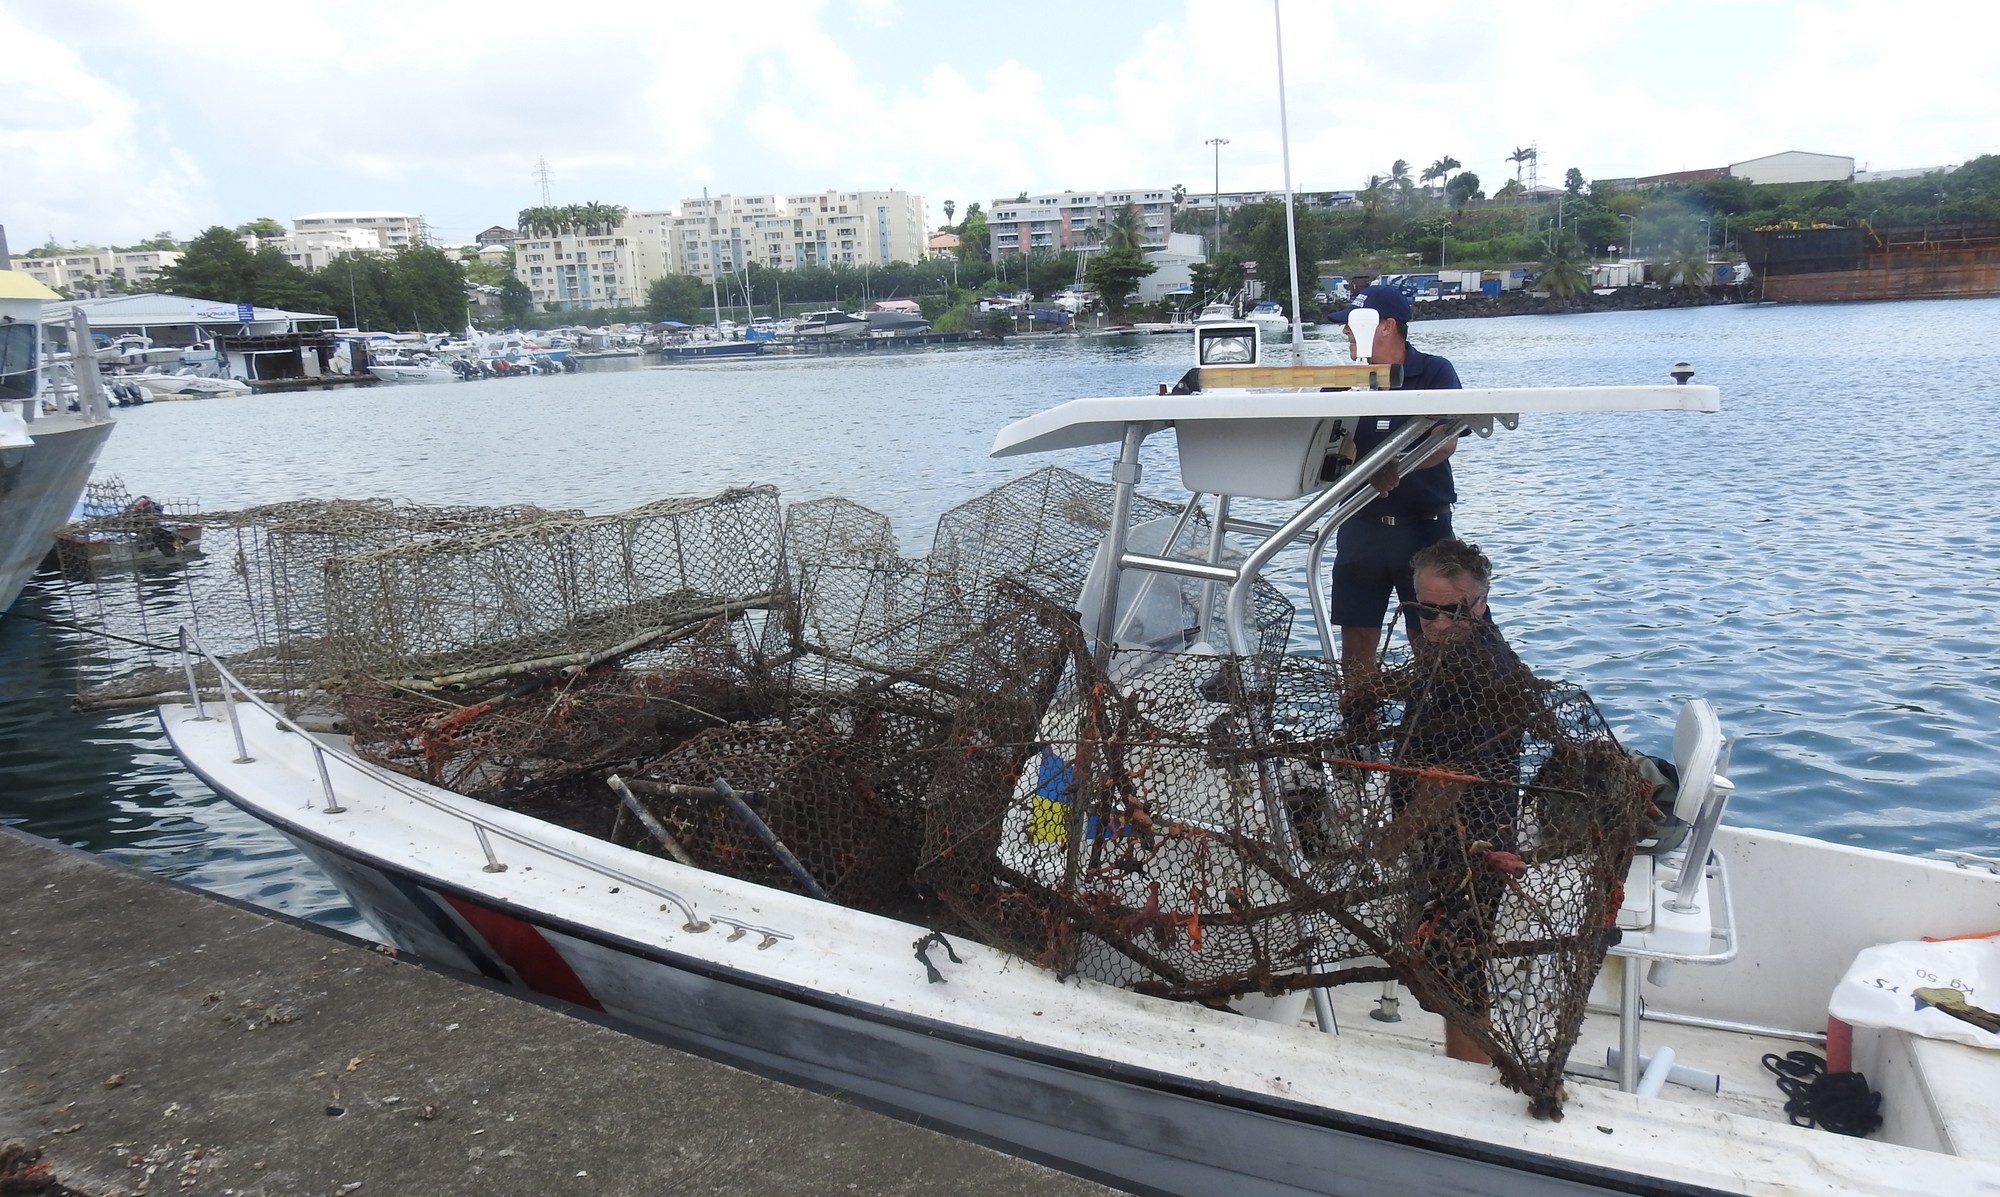     14 nasses et une ligne de fond détruites dans une zone interdite à la pêche

